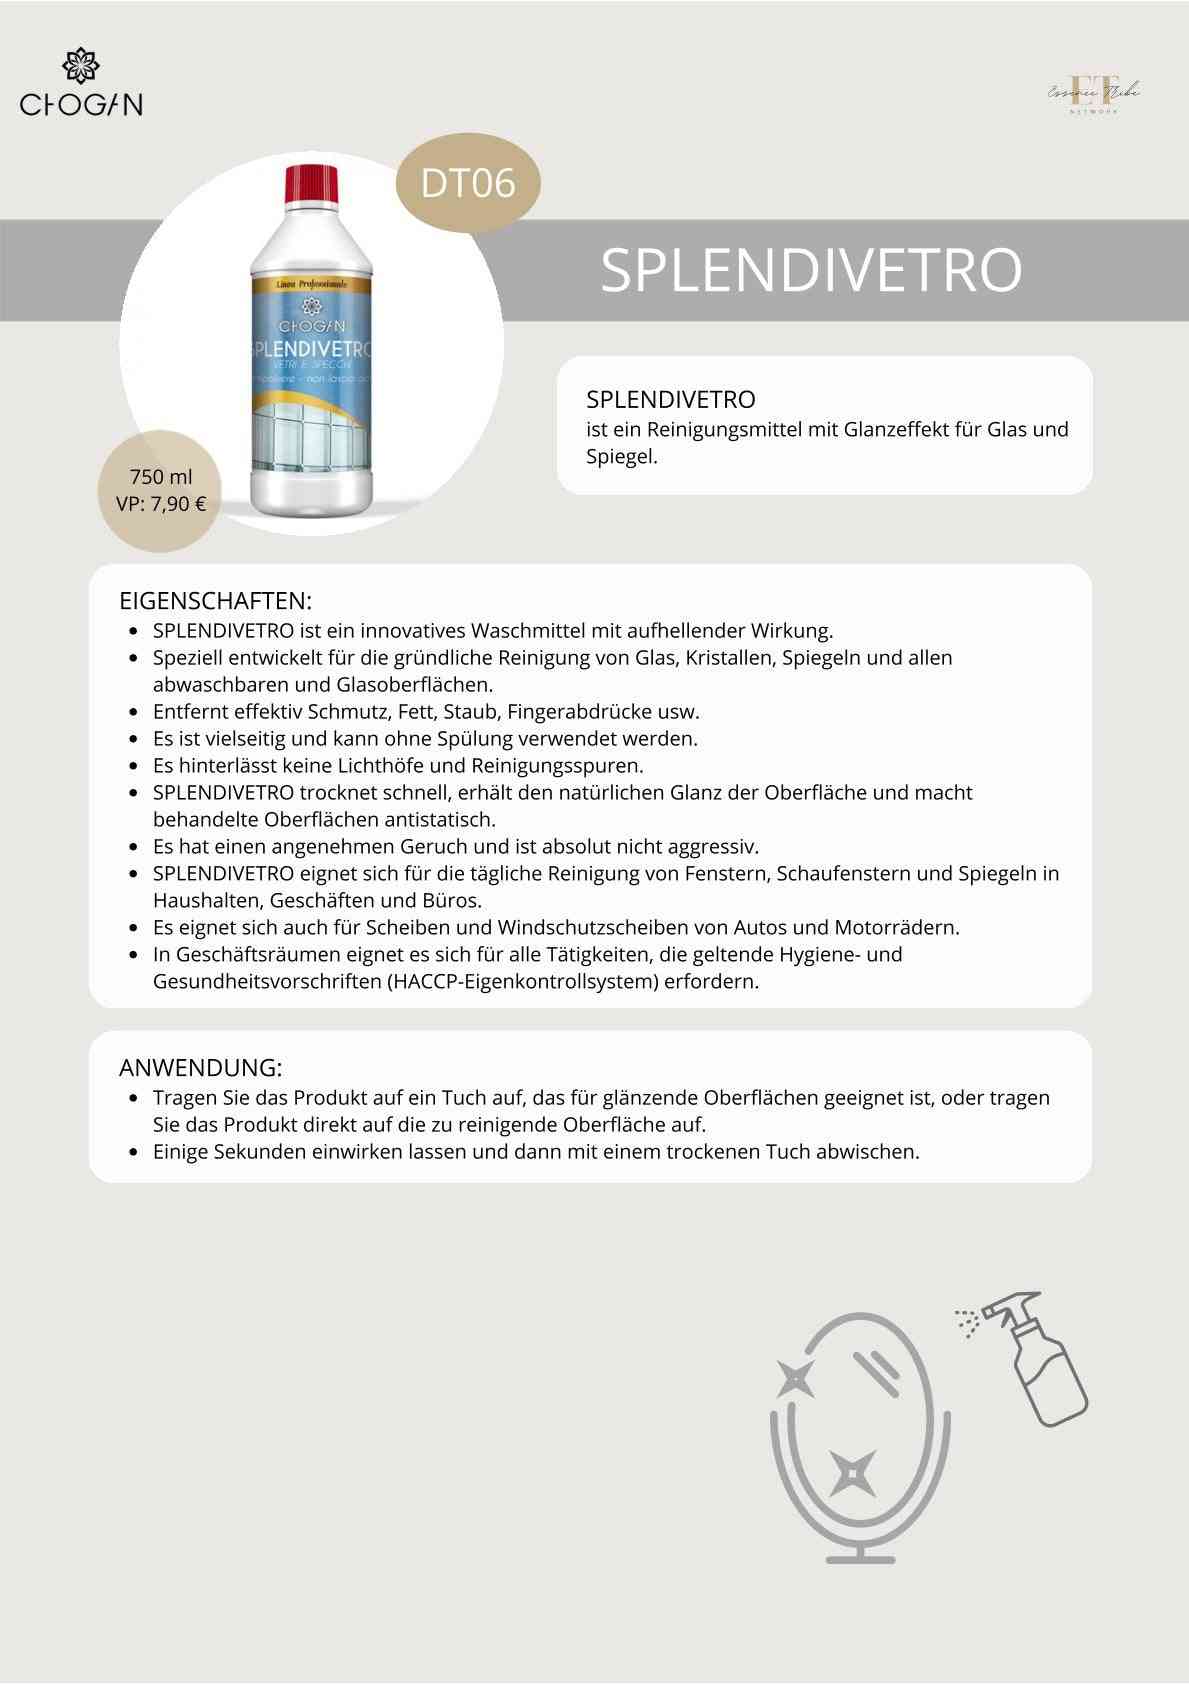 Splendivetro – glass cleaner